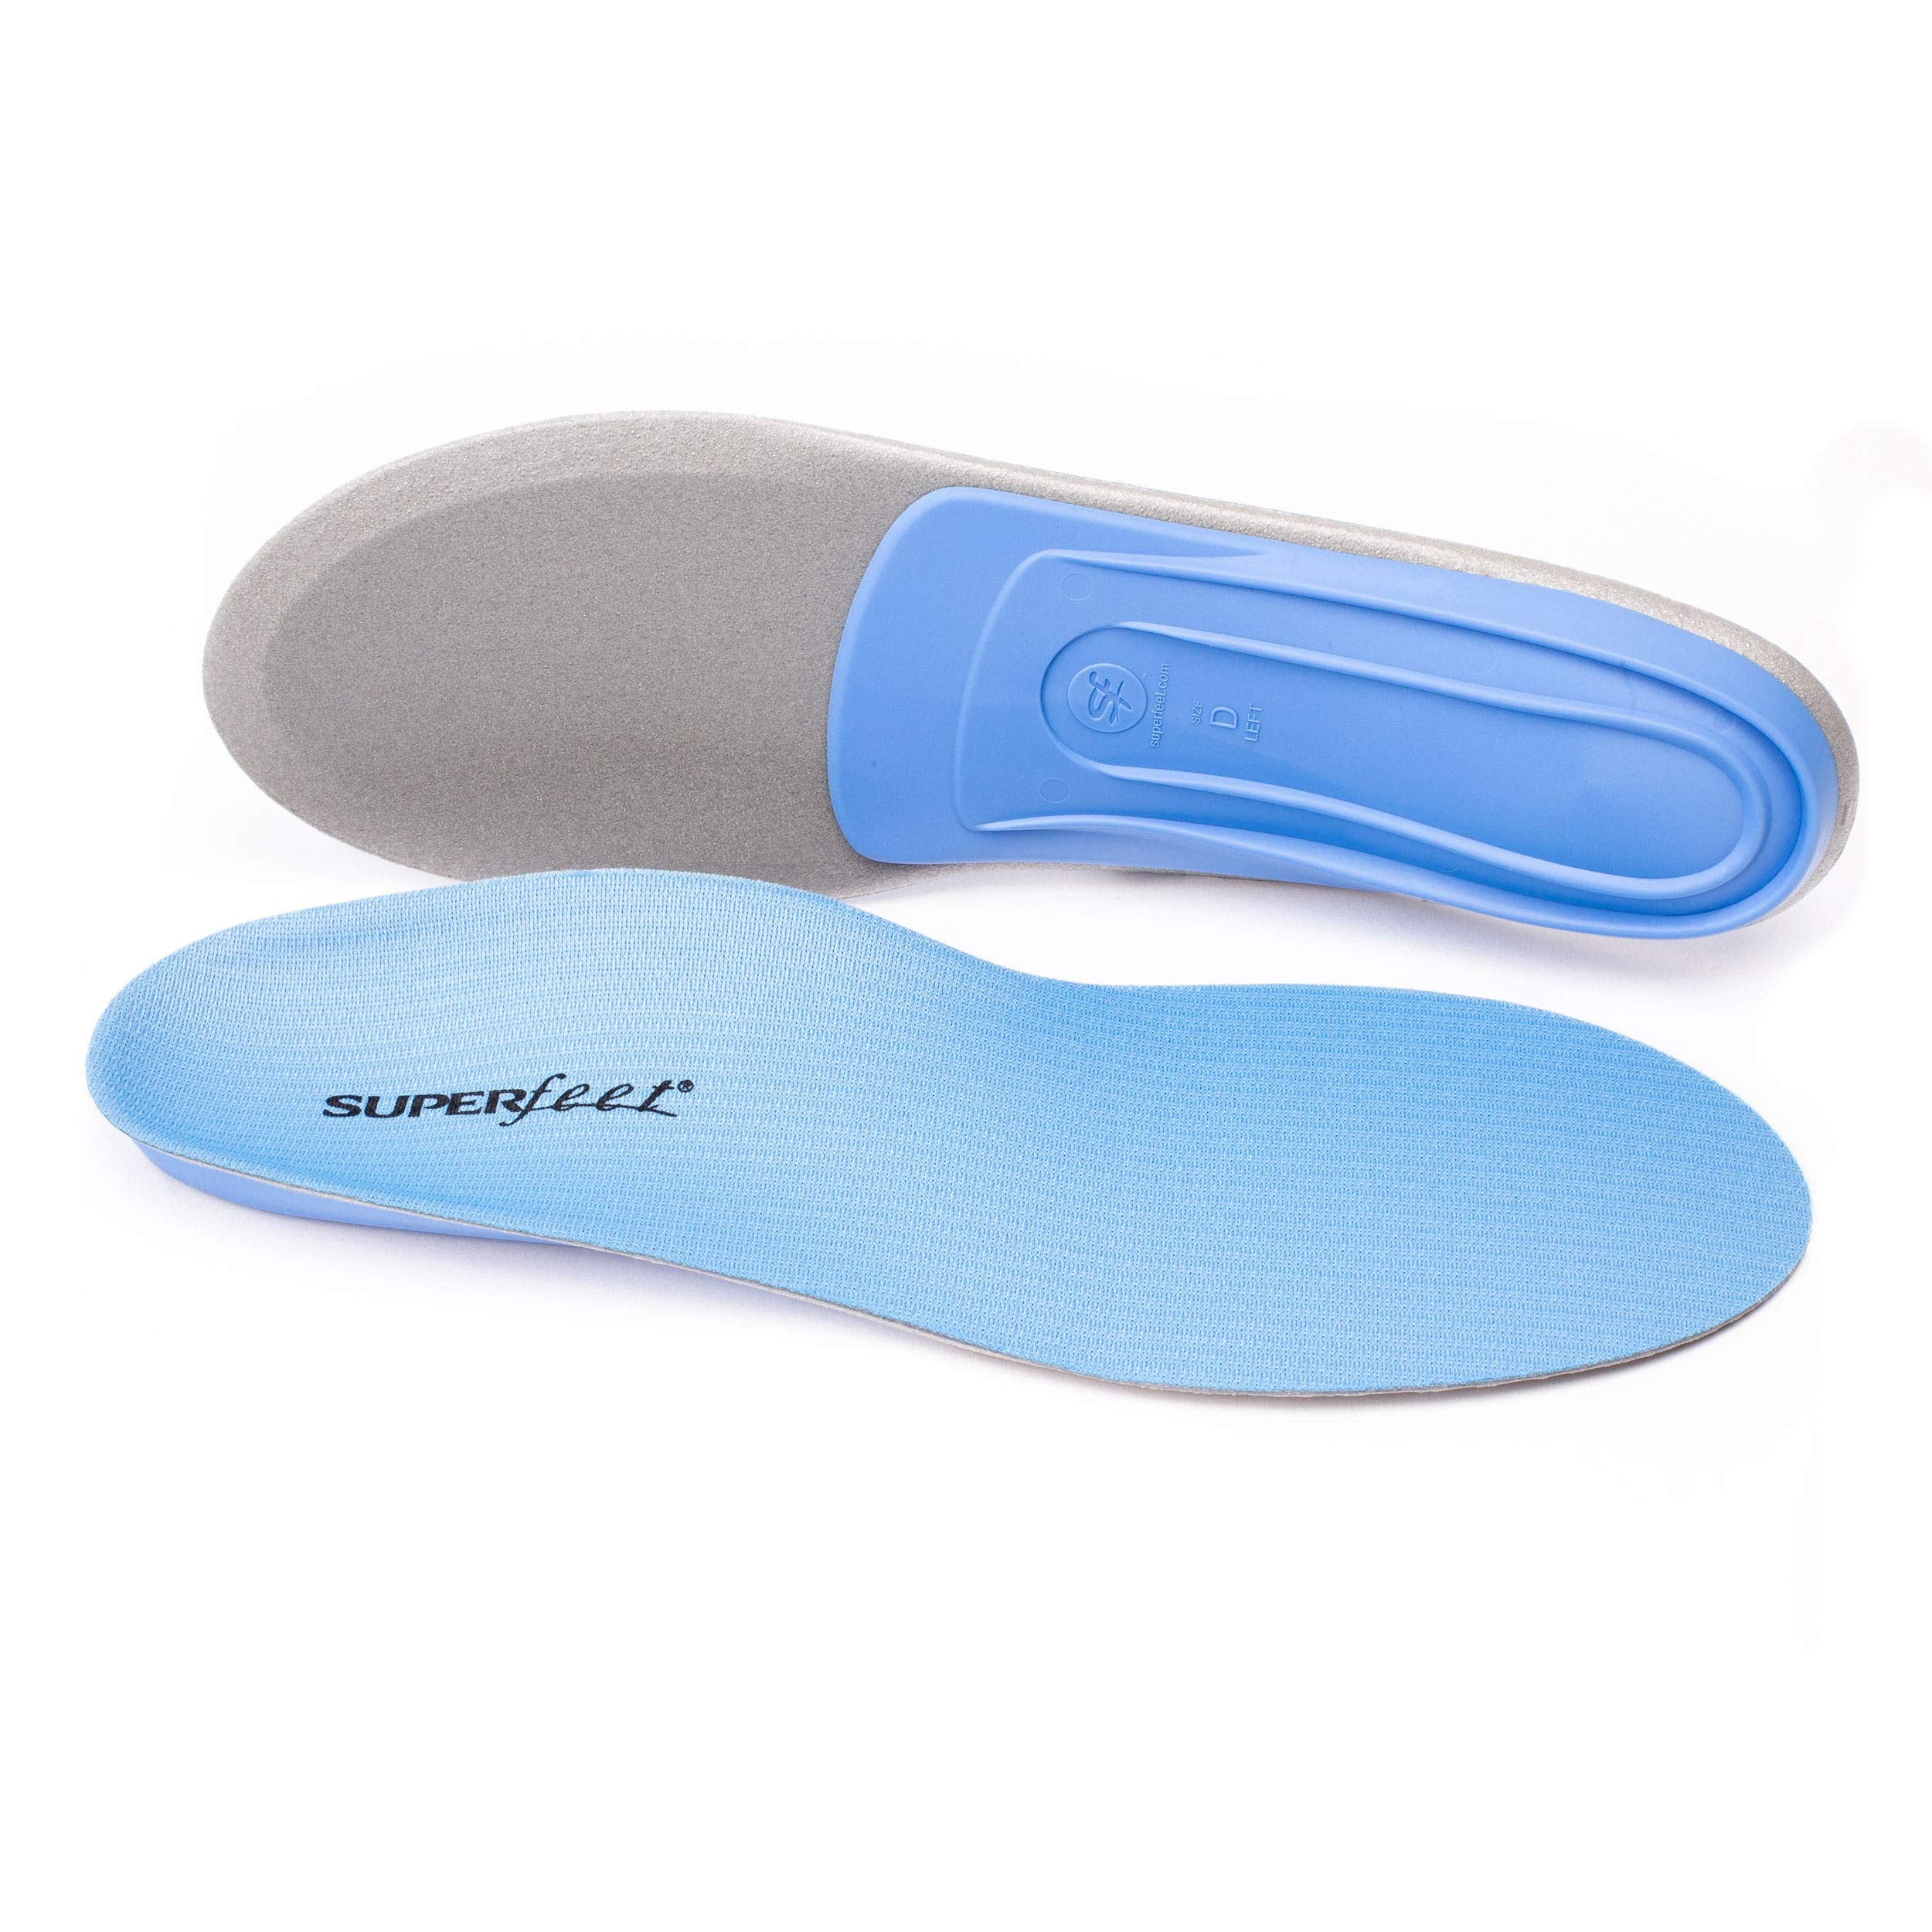 Superfeet BLUE - Foam Shoe Insoles for Medium Arch Support - 5.5-7 Men / 6.5-8 Women